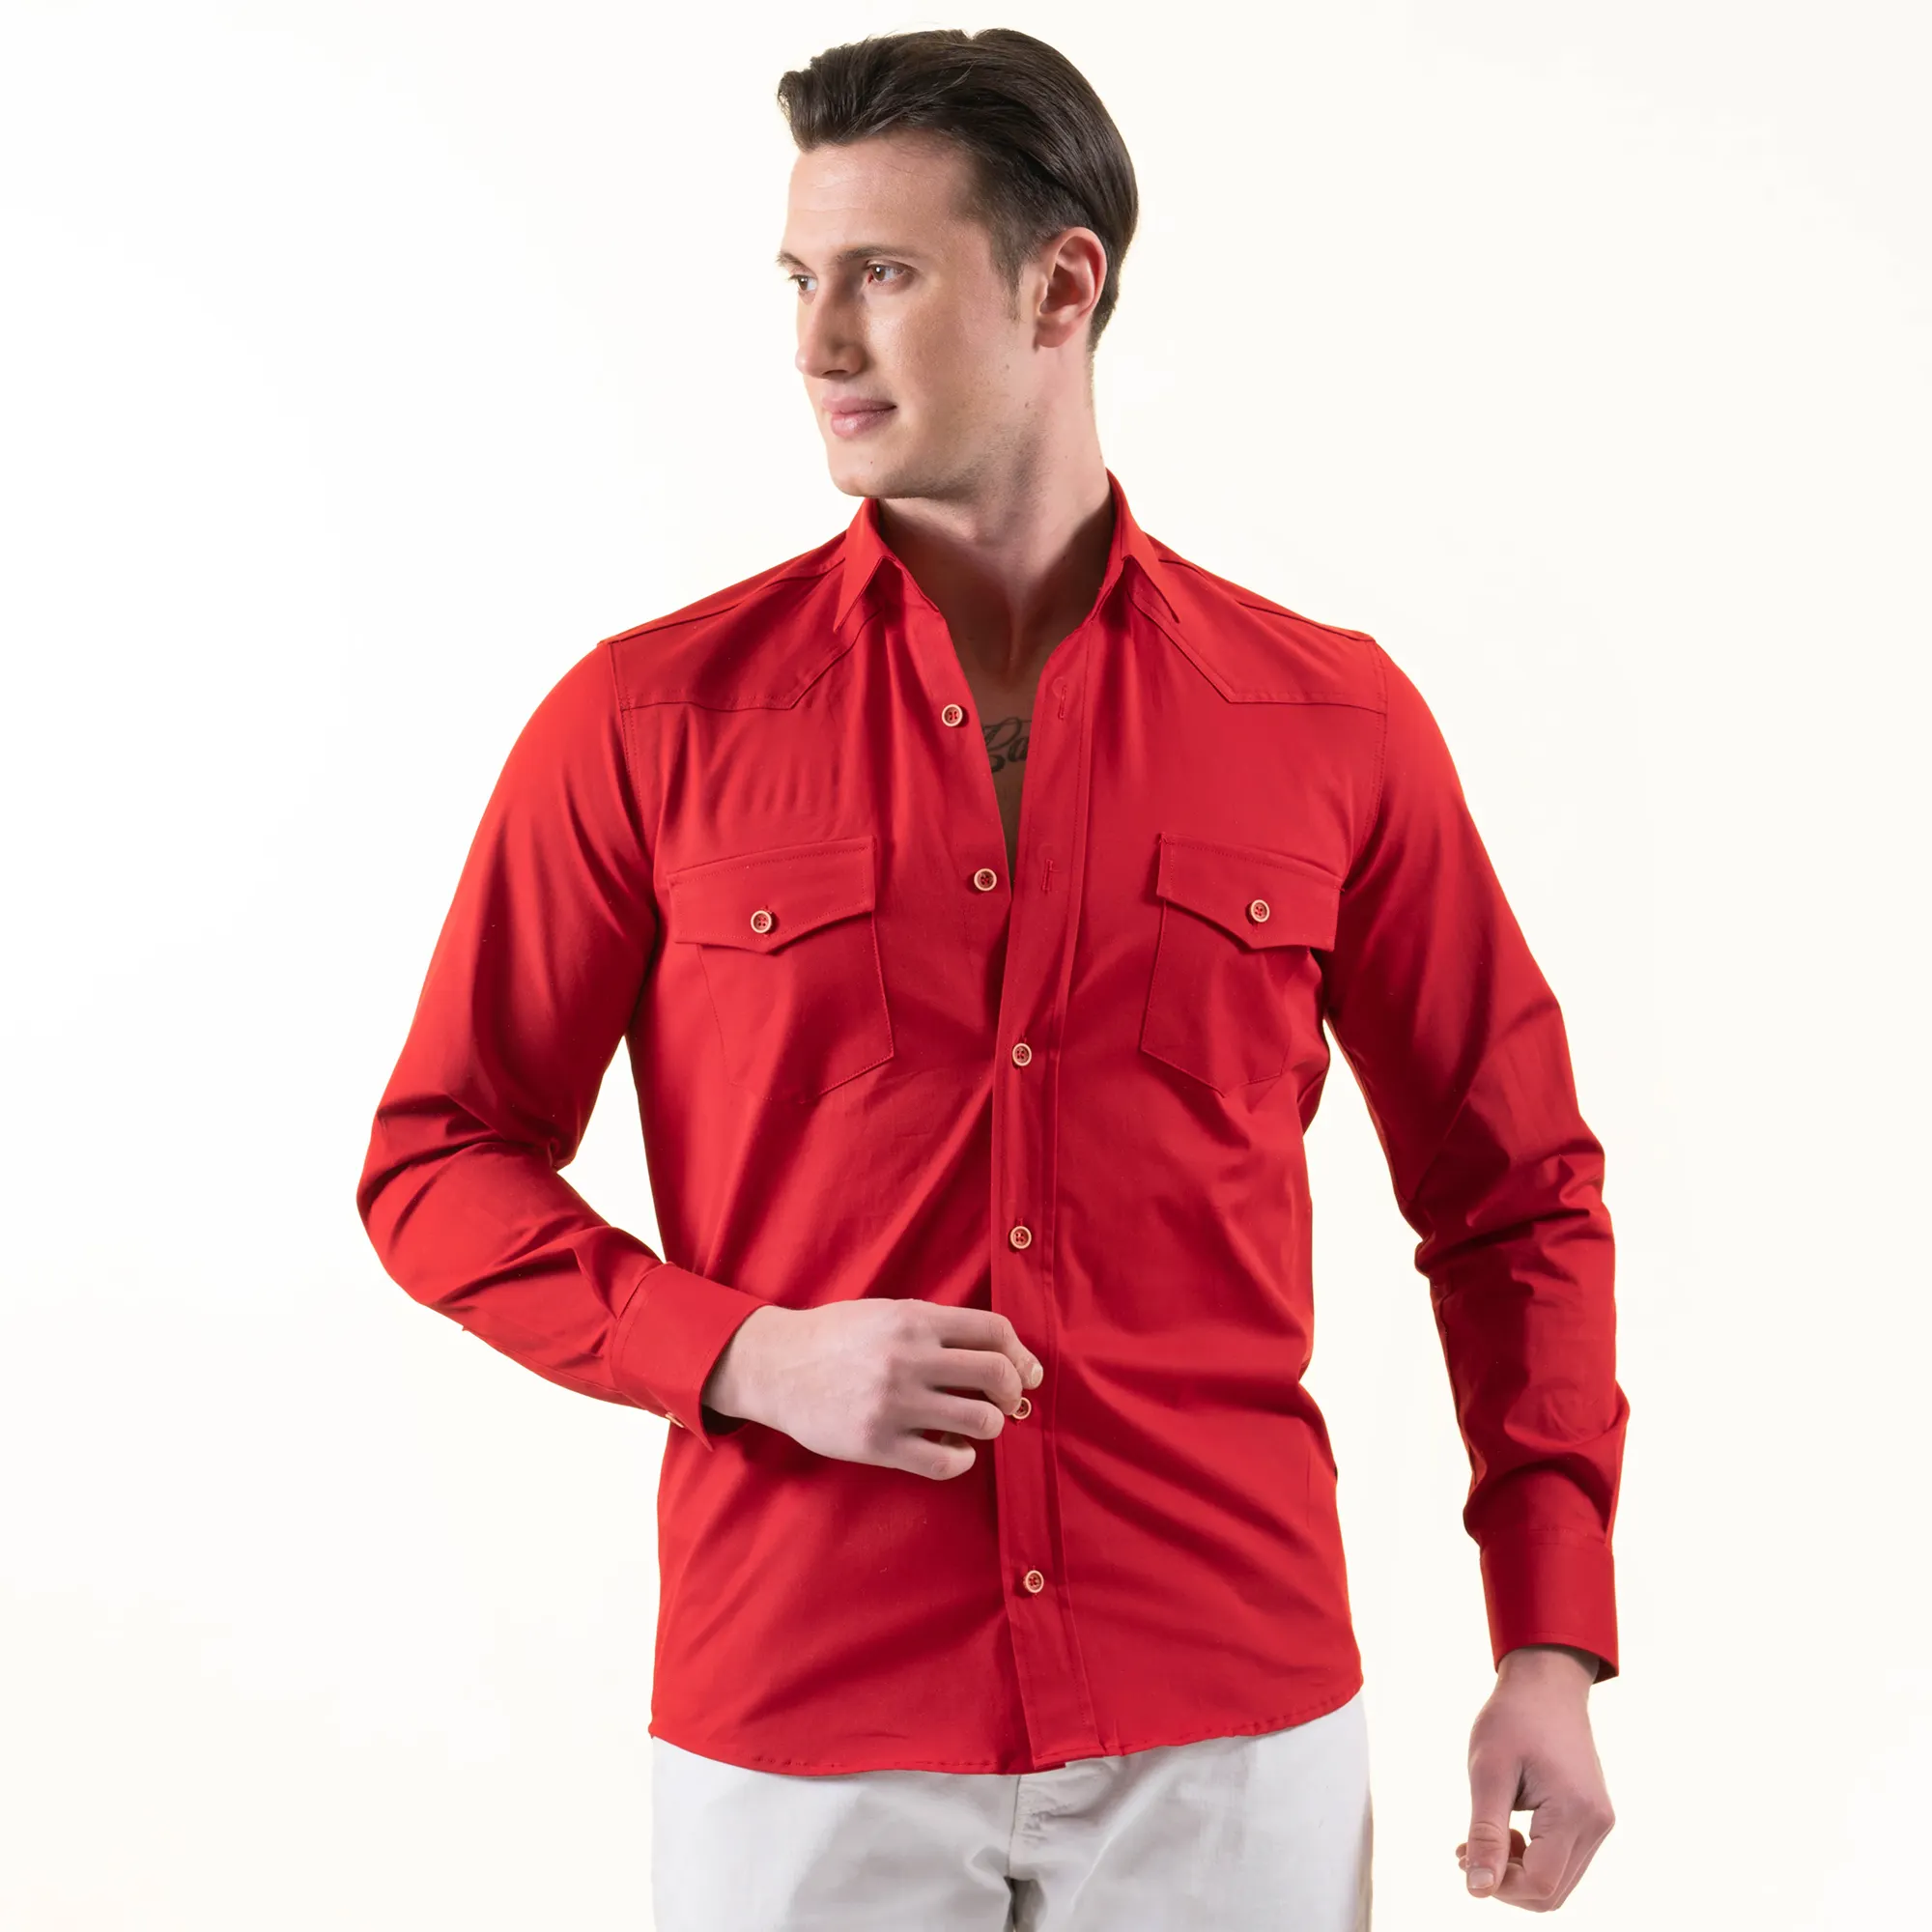 Uzman köşe fabrika özel erkek yeni moda rahat safari gömlek düğme Up özel baskı kısa kollu gömlek erkek gömlek